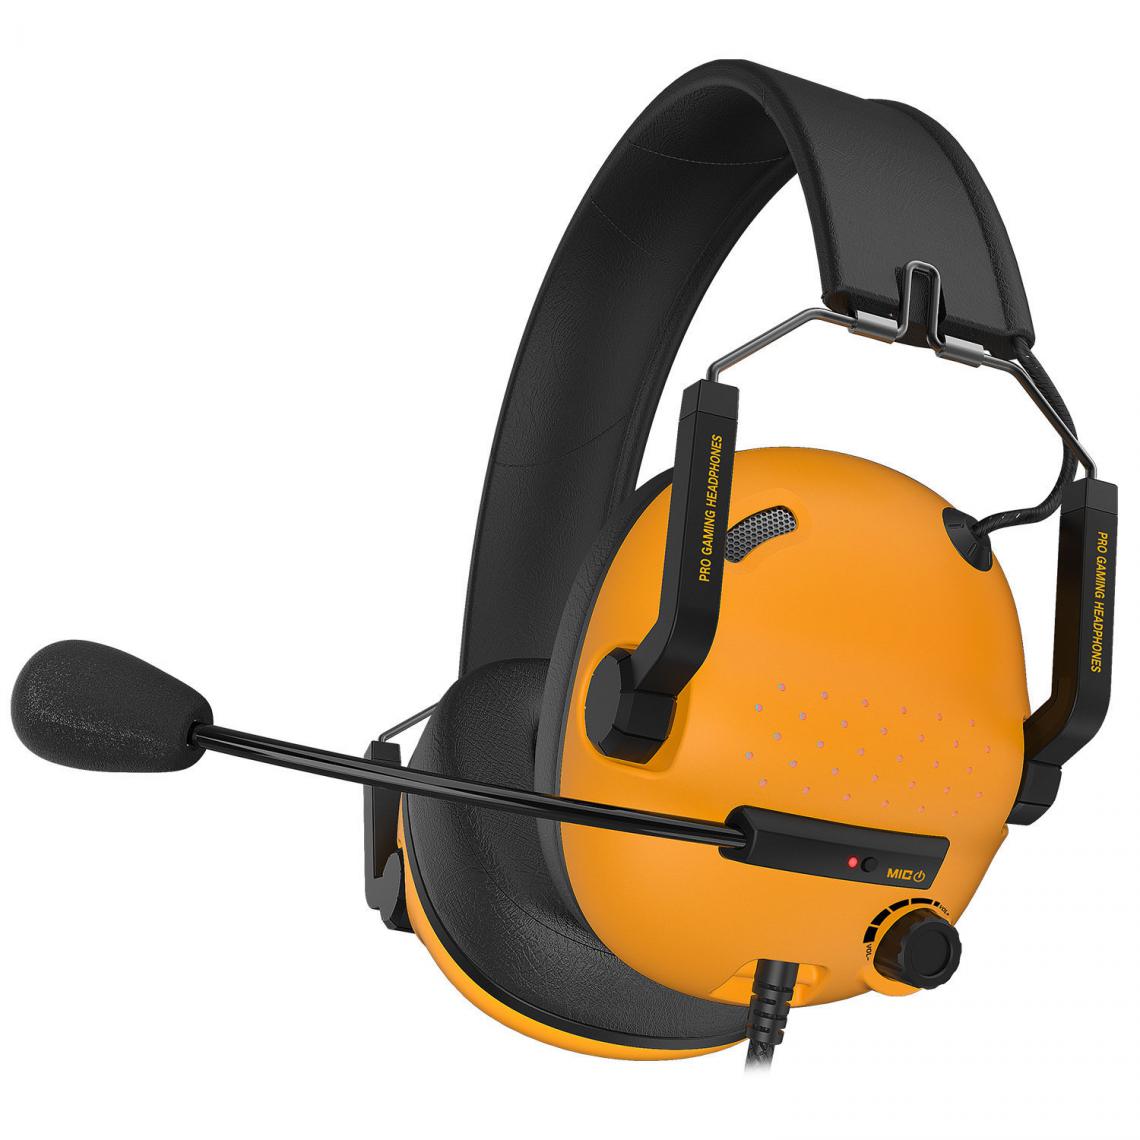 Chrono - Casque de jeu SG500 Surround Sound Pro avec microphone antibruit - Coussinets d'oreille amovibles en mousse à mémoire de forme - Casque portable pliable pour PC, PS4, PS5, Xbox One, Switch(jaune) - Casques de réalité virtuelle